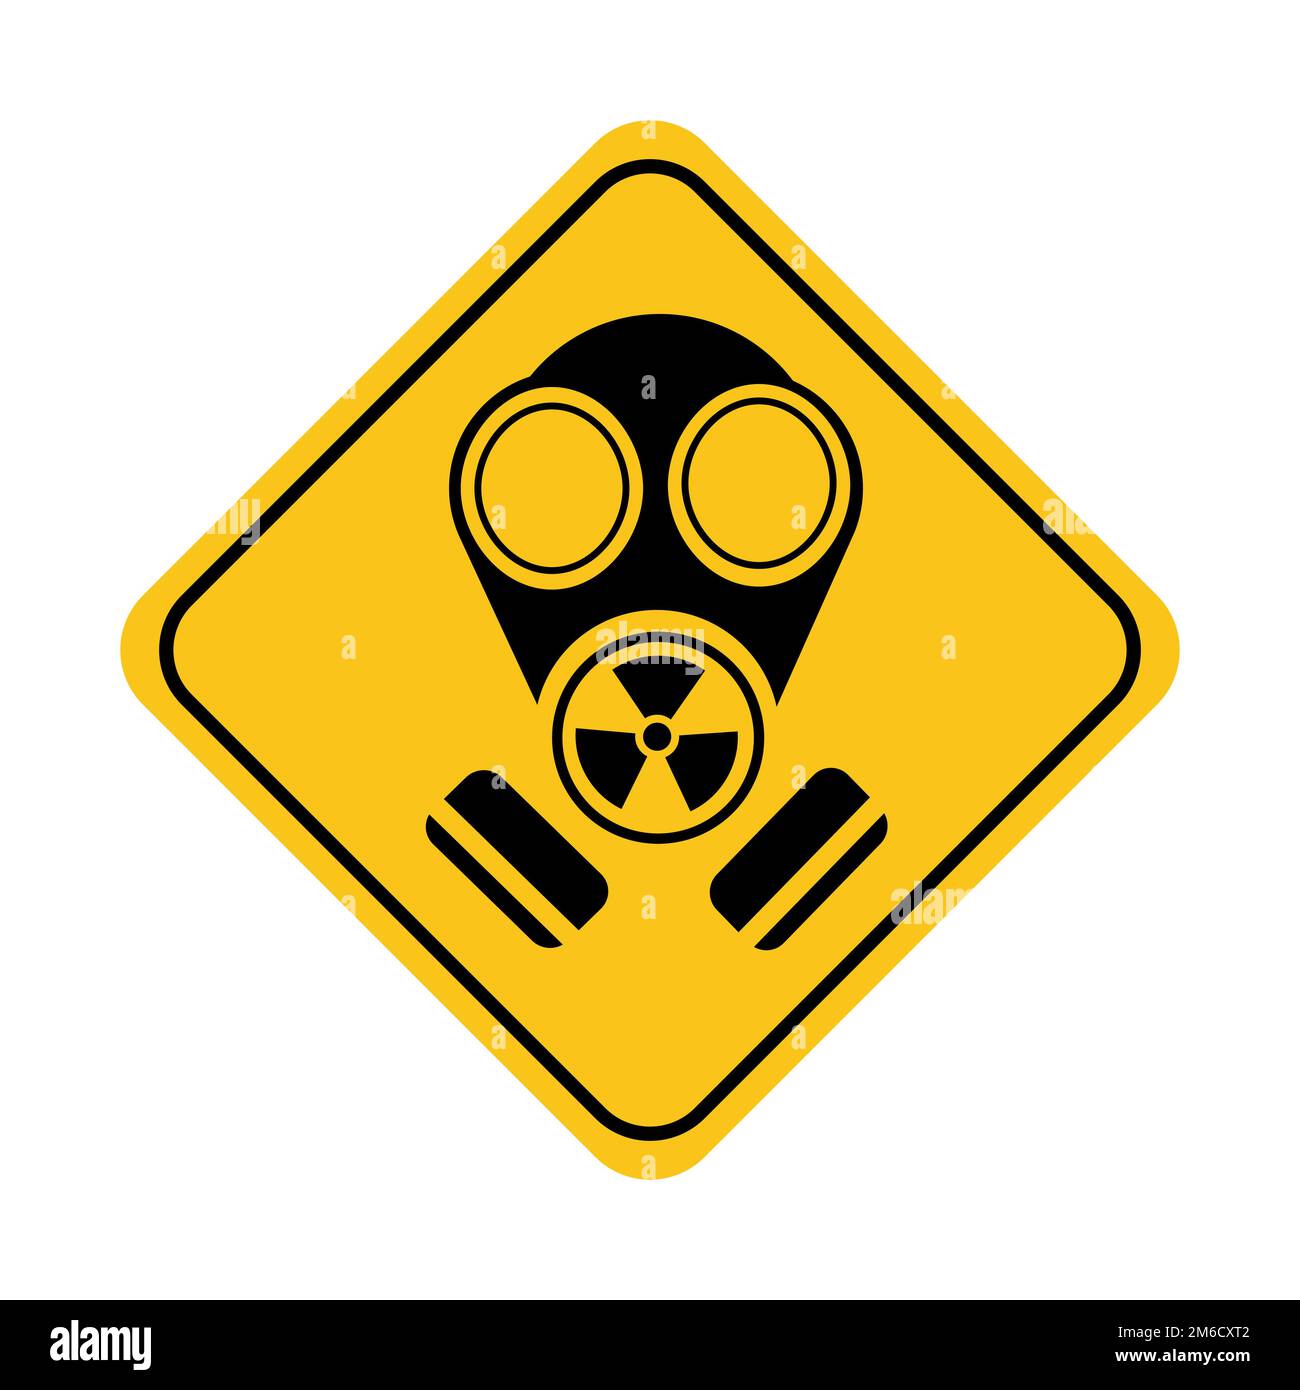 Semplice disegno di un cartello con maschera a gas, avvertimento di pericolo Foto Stock